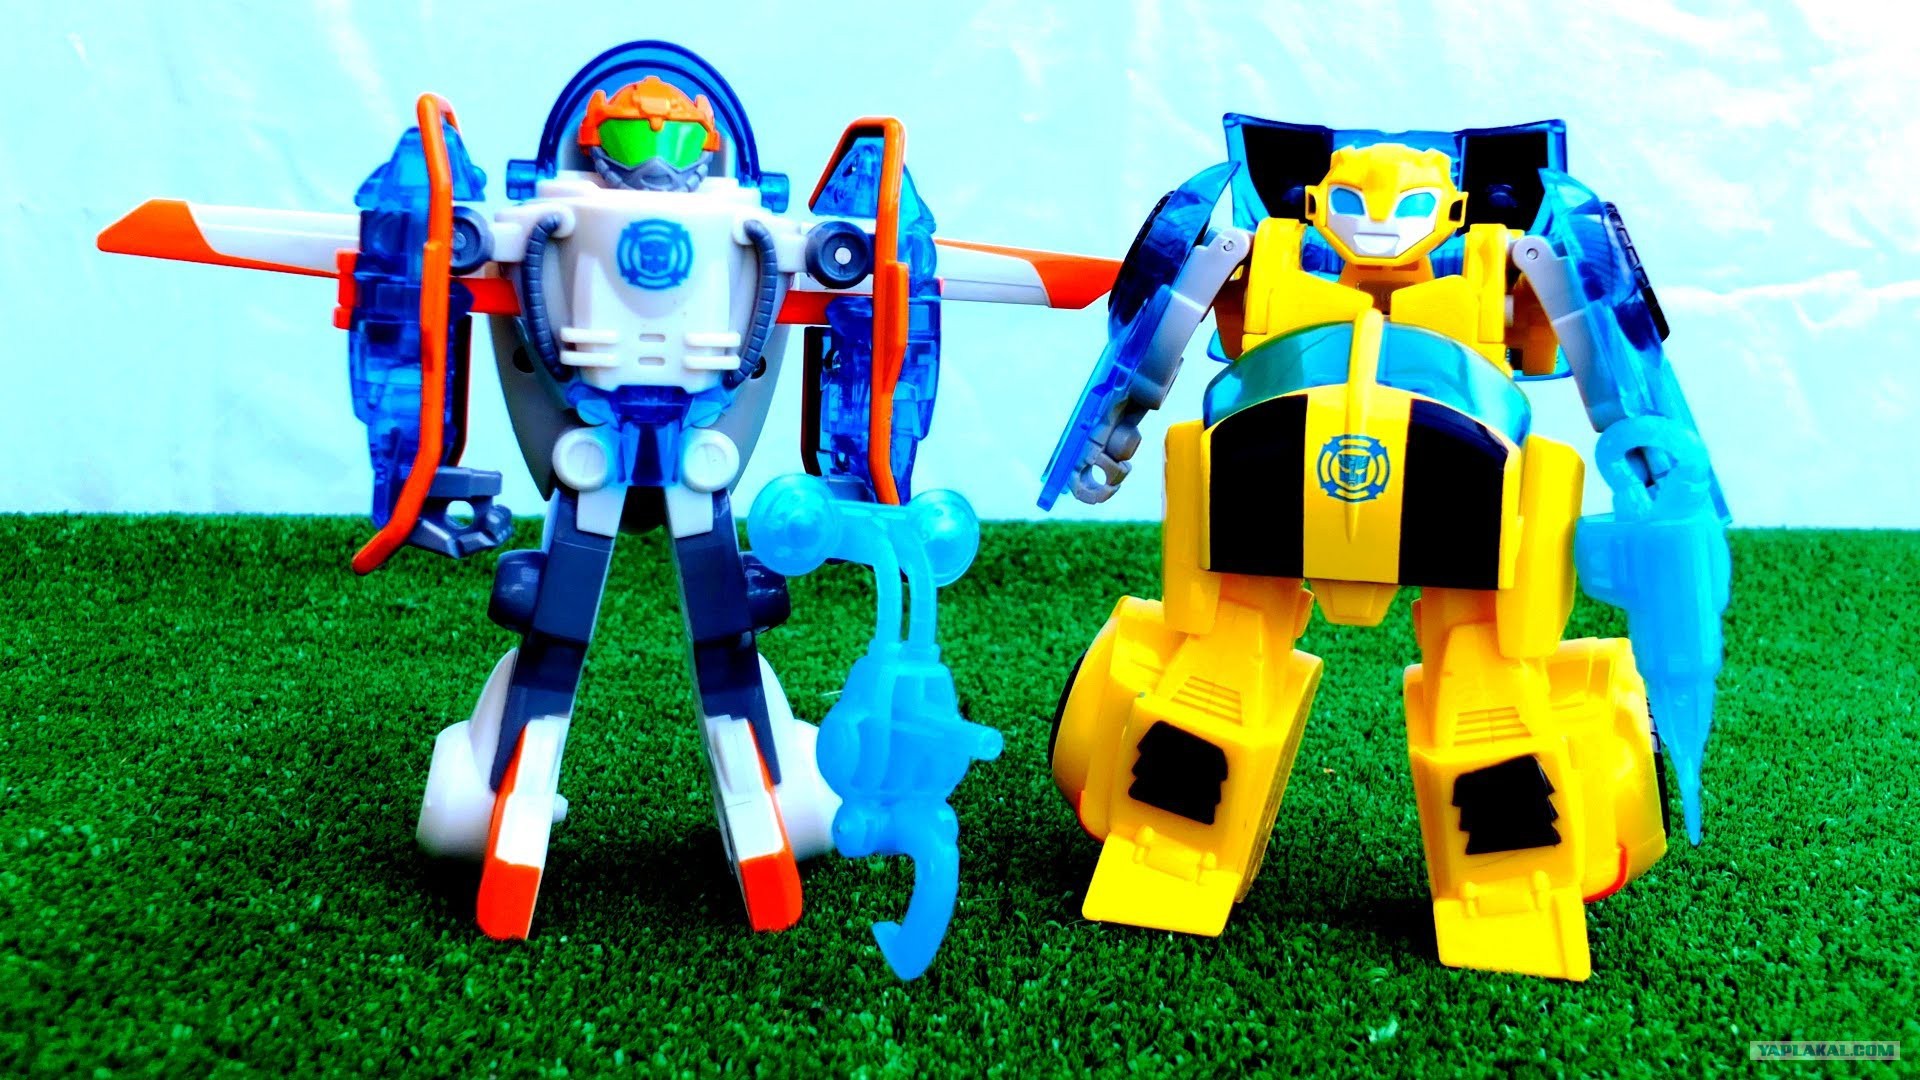 Боты развлечения. Роботы трансформеры спасатели Бамблби. Трансформеры боты спасатели игрушки Бамблби. Игрушки боты спасатели Оптимус Прайм.